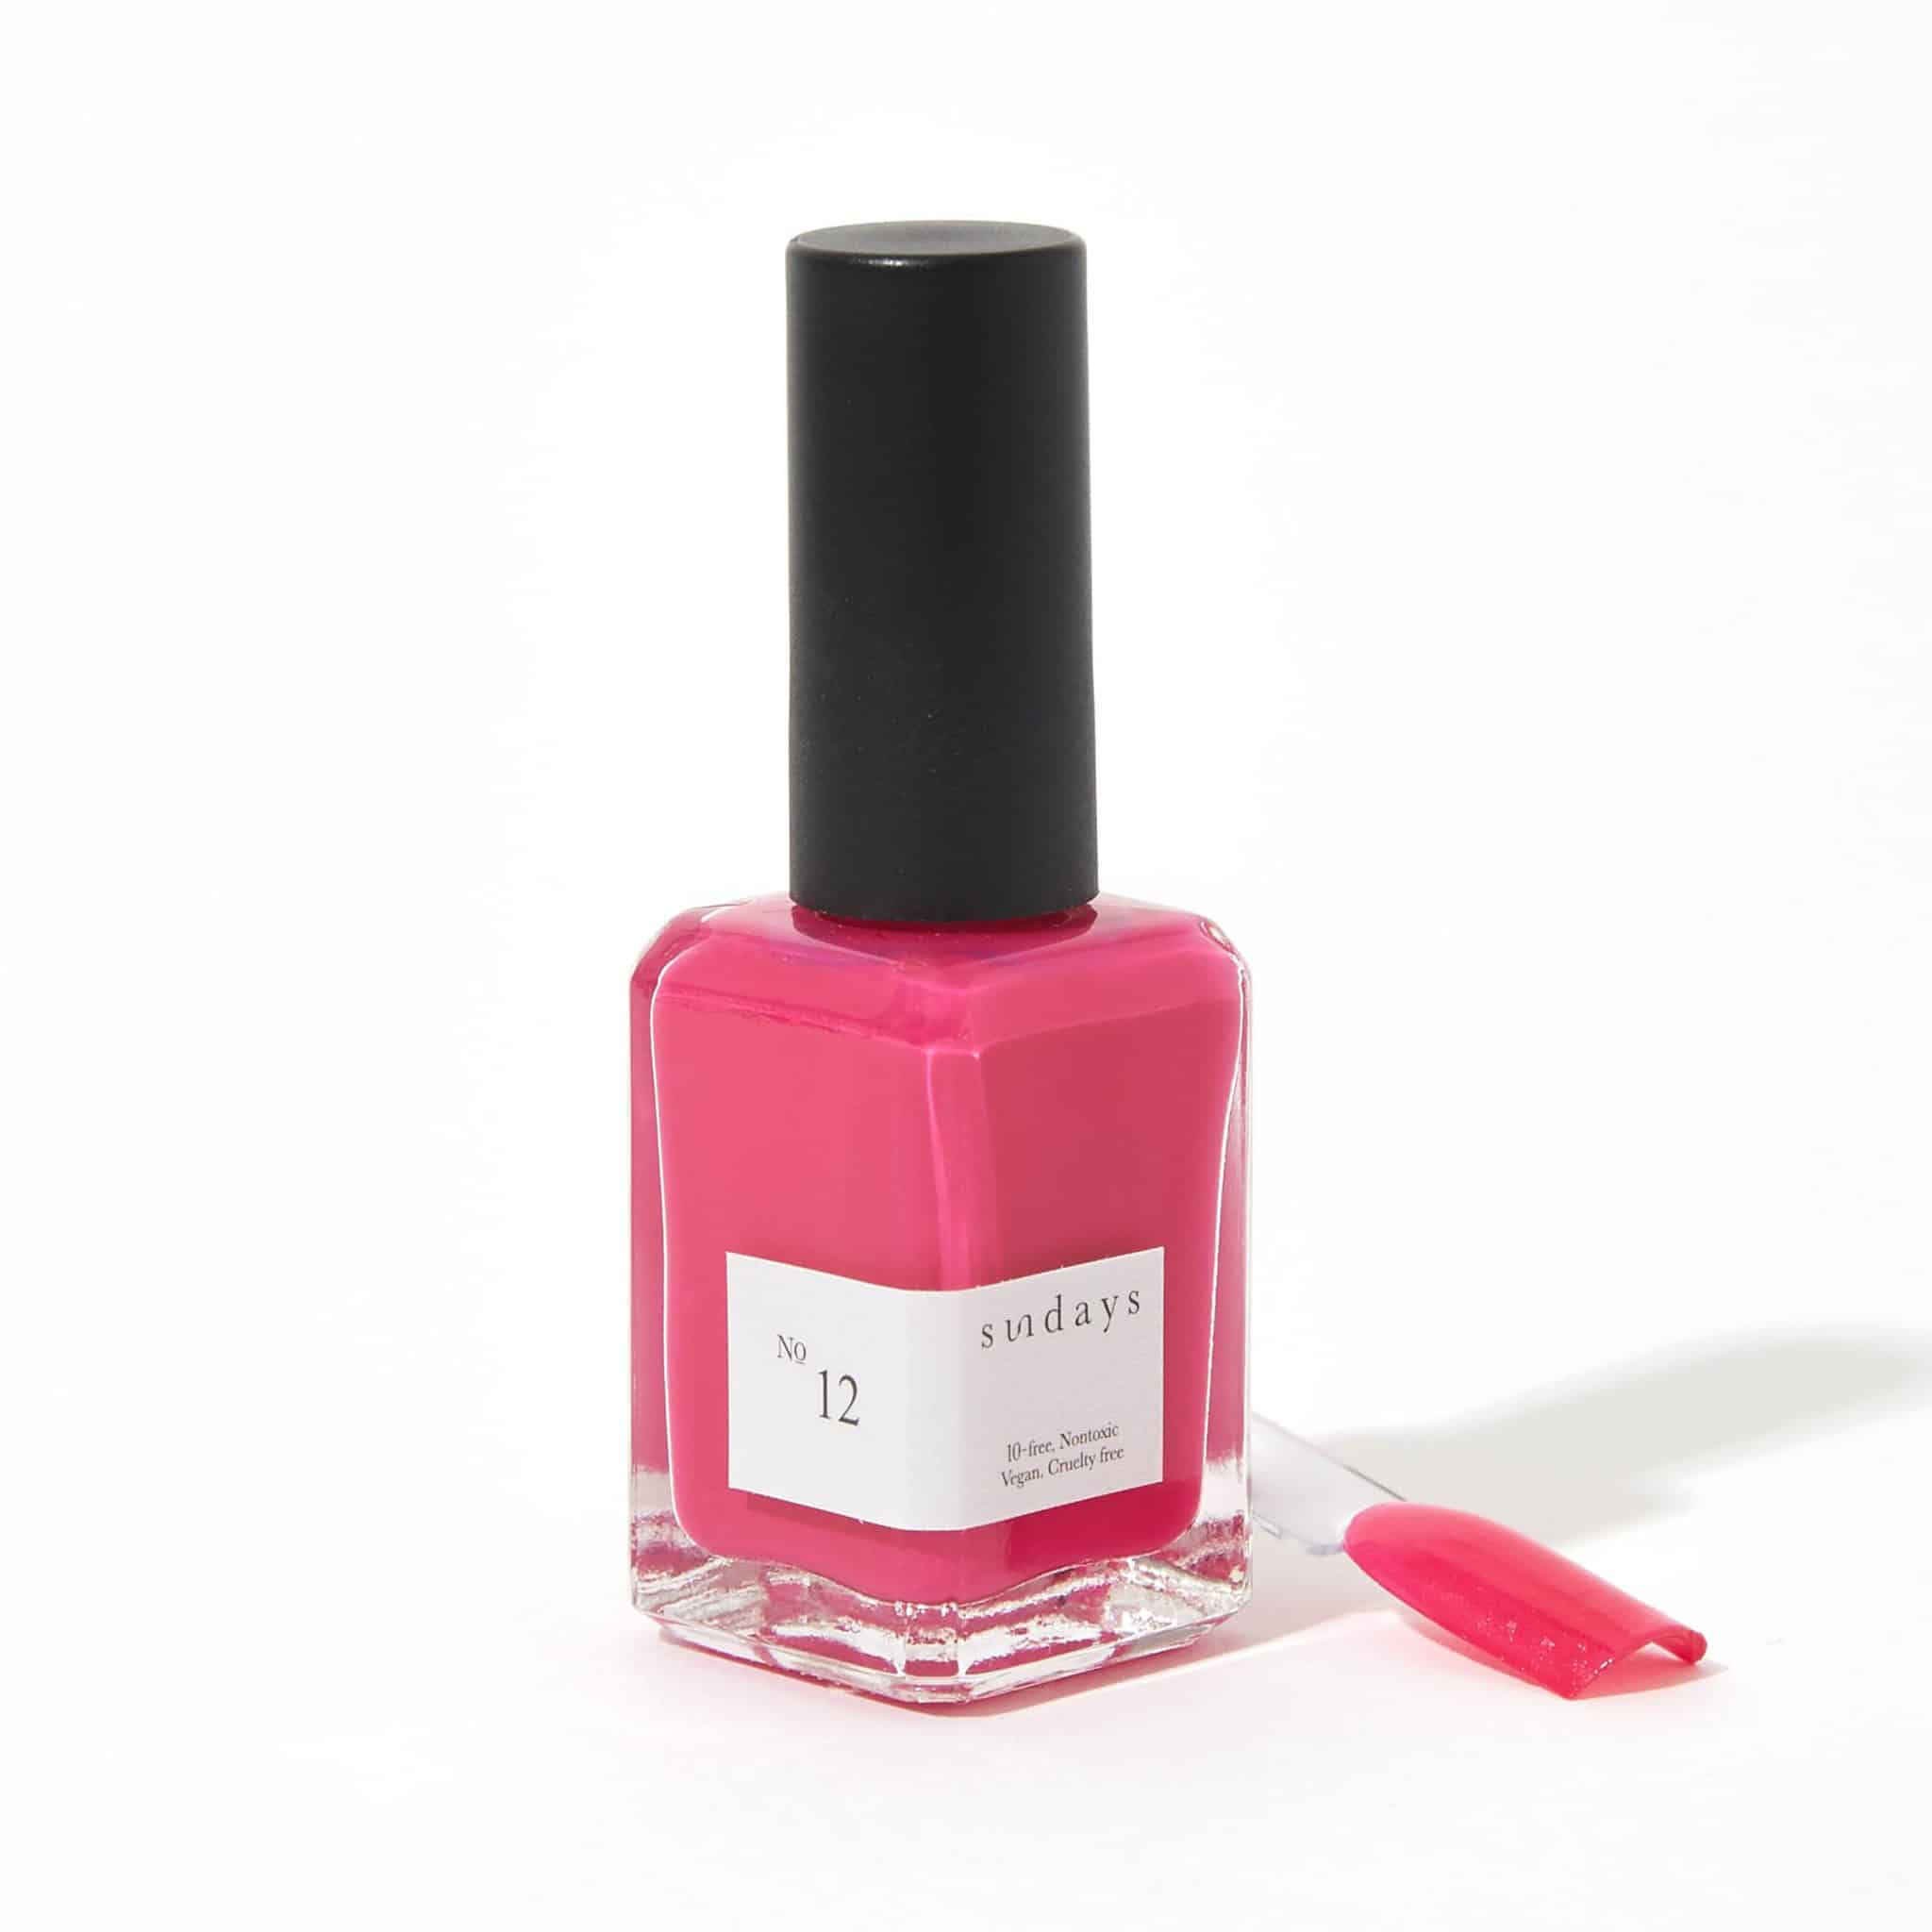 Non-toxic nail polish in deep pink